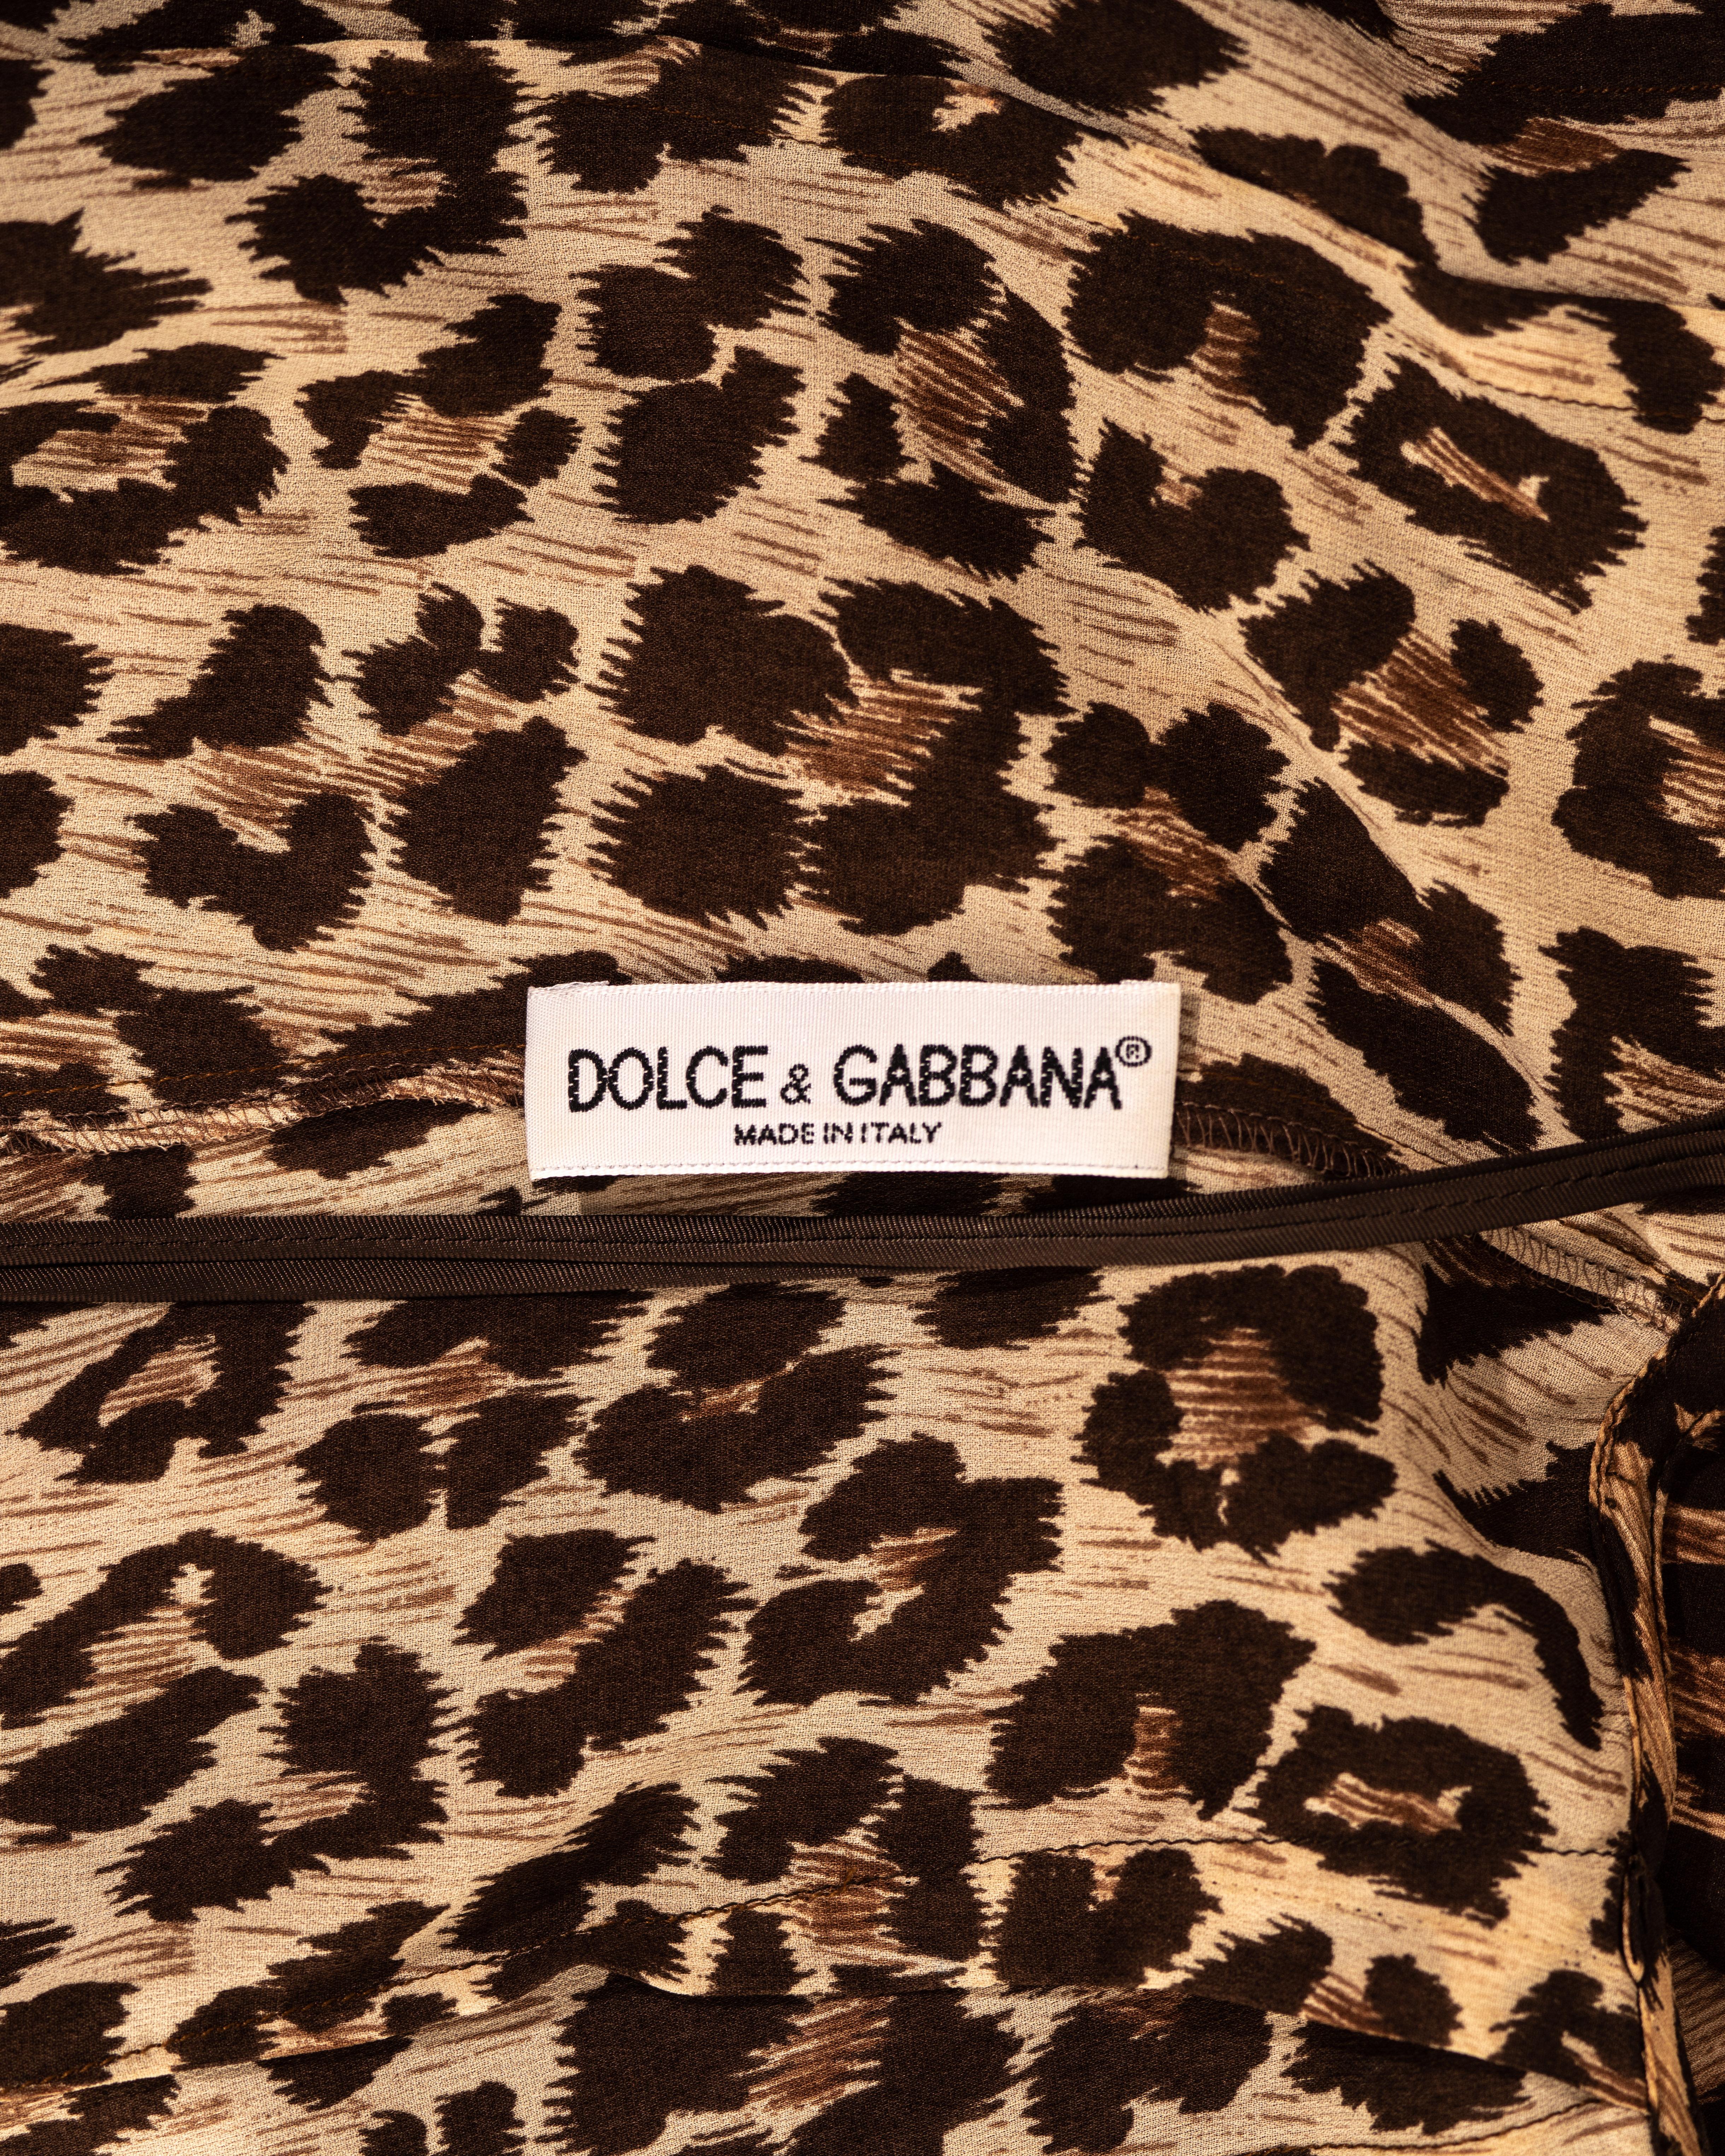 Women's Dolce & Gabbana leopard print silk chiffon evening slip dress, ss 1997